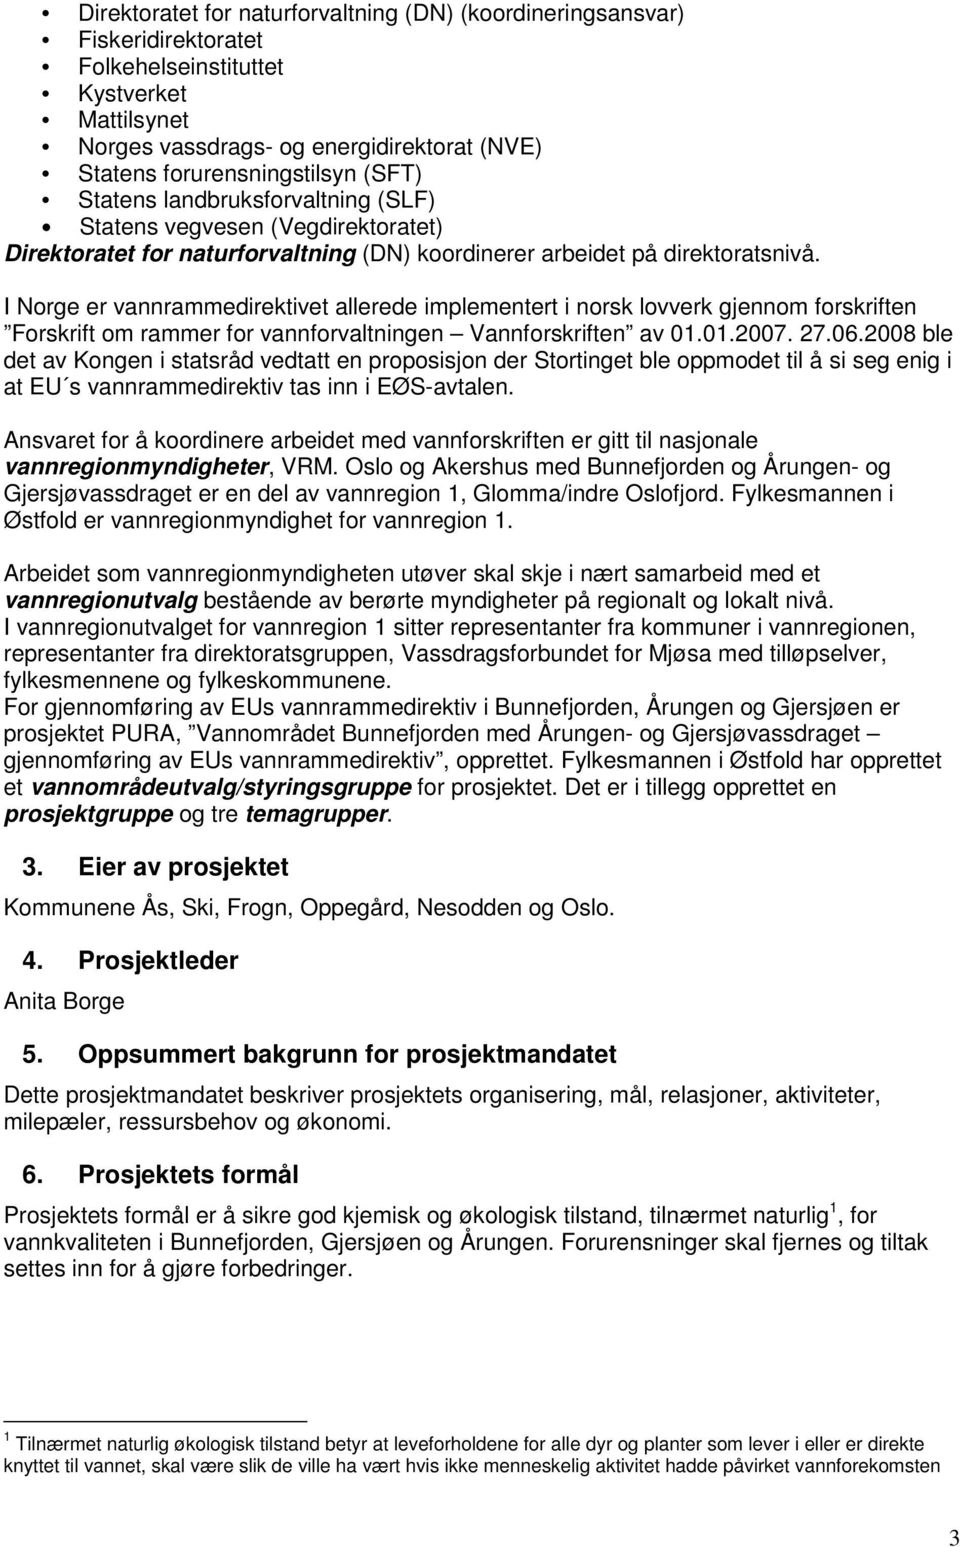 I Norge er vannrammedirektivet allerede implementert i norsk lovverk gjennom forskriften Forskrift om rammer for vannforvaltningen Vannforskriften av 01.01.2007. 27.06.